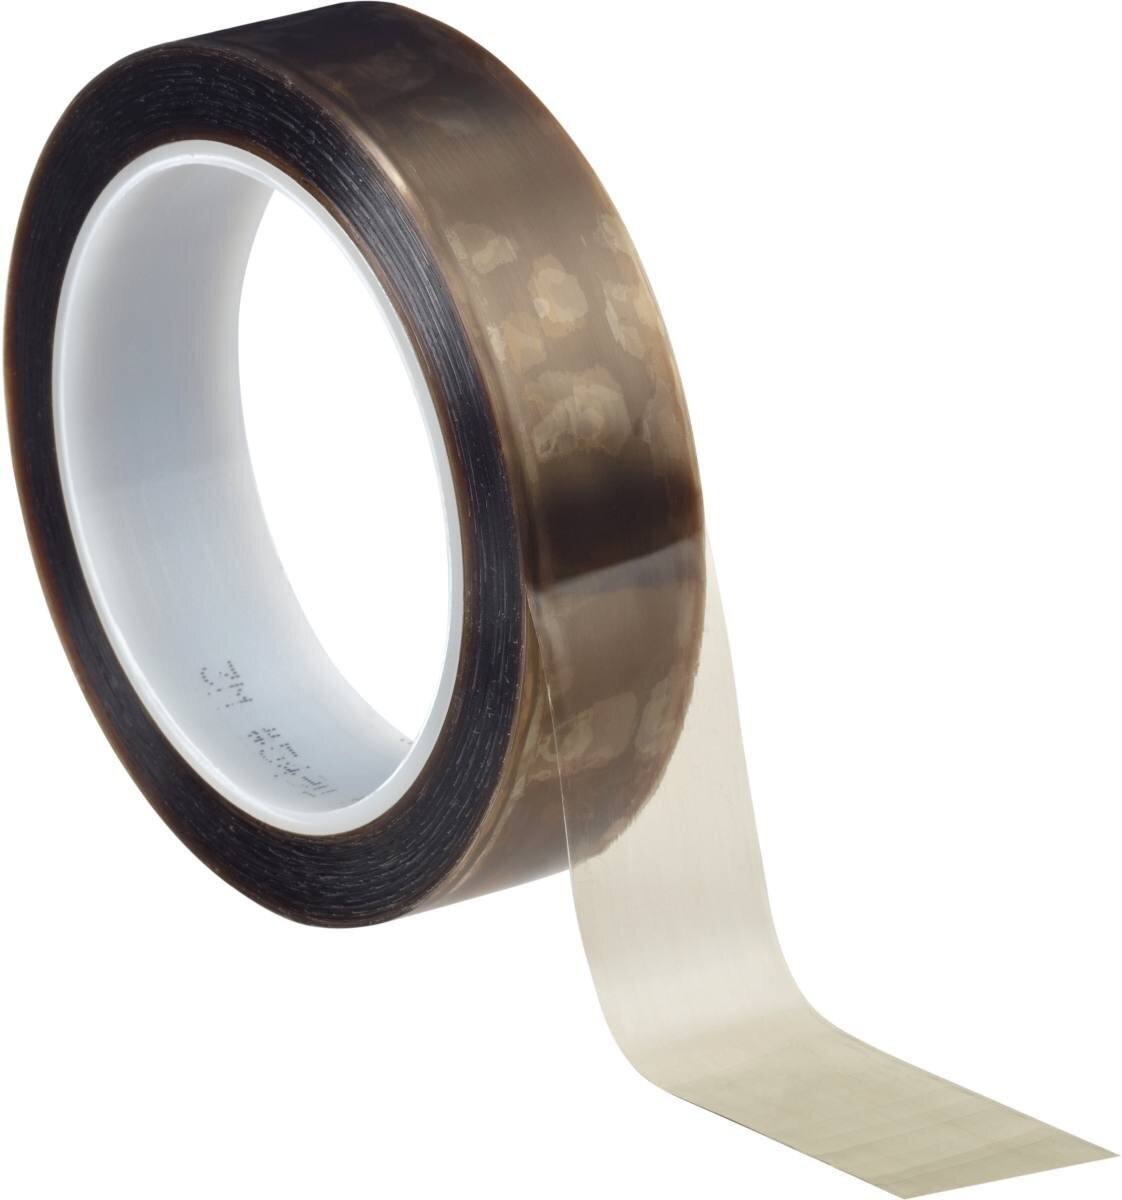 3M 5491 Nastro adesivo in film estruso di PTFE 60,3 mmx33 m, 0,17 mm, silicone